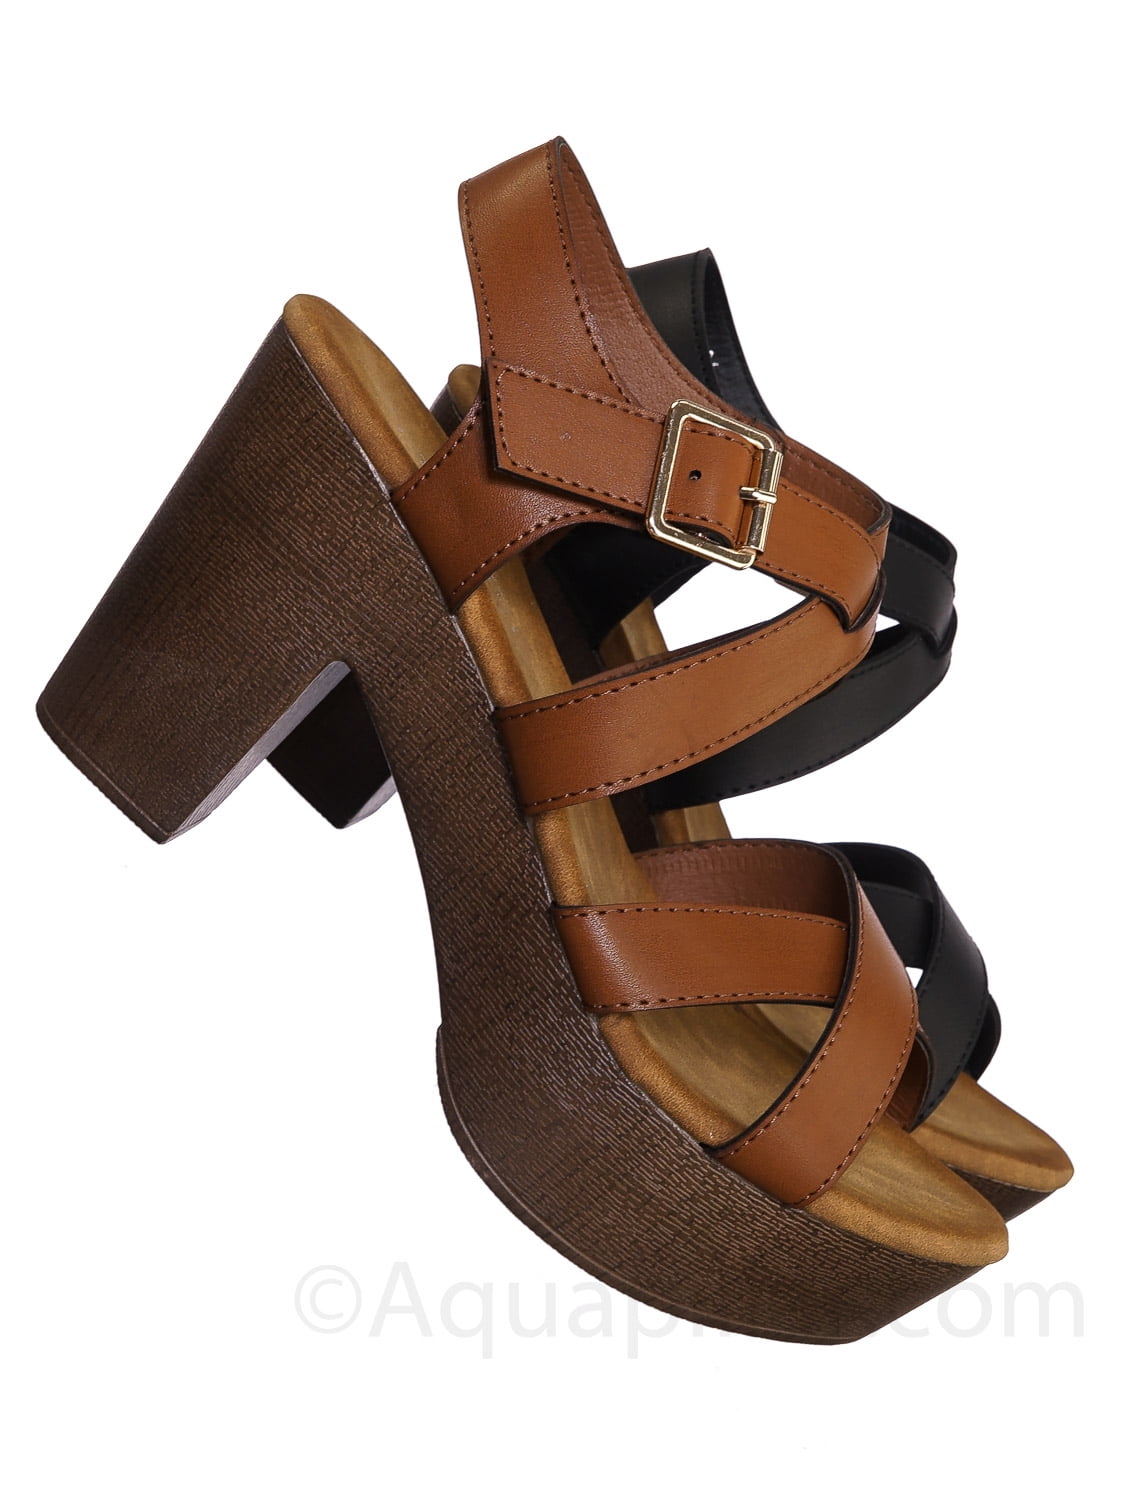 Buy > wooden heel sandal > in stock